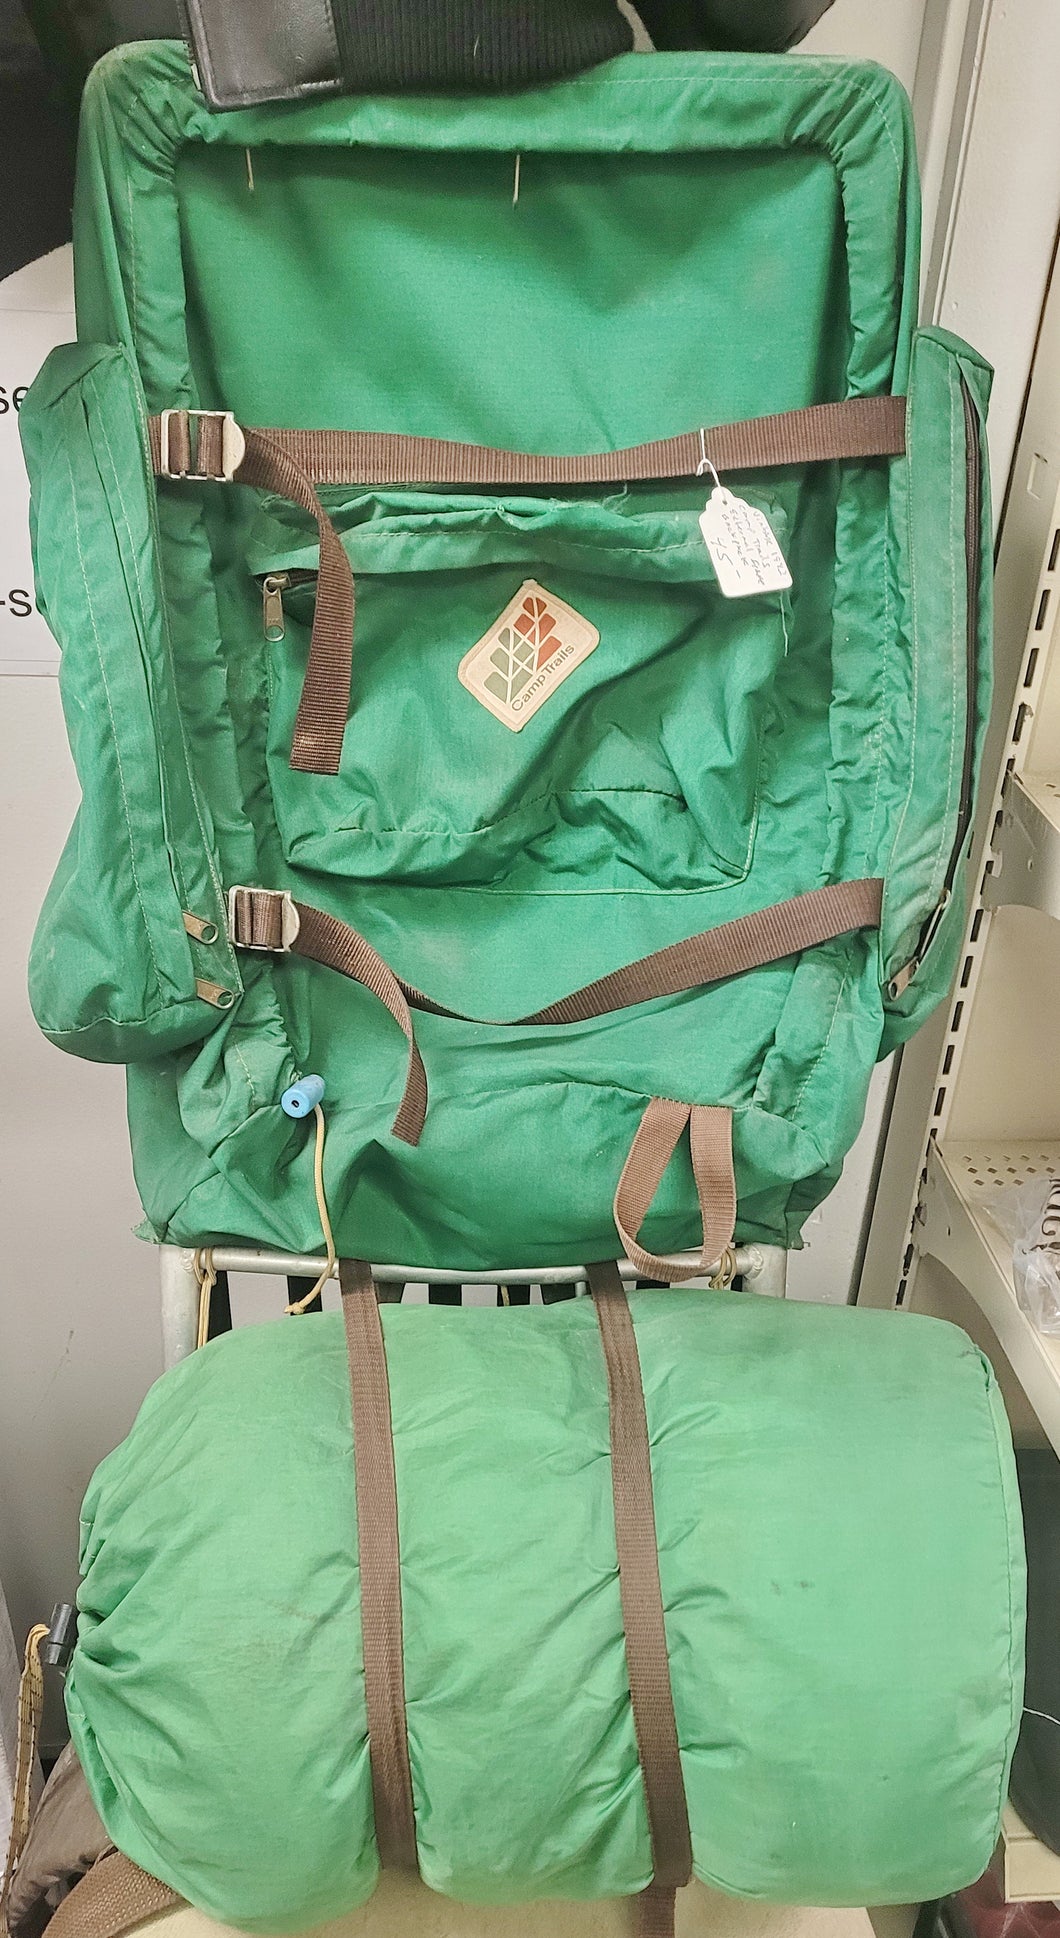 Vintage 1982 Camp Trails External Frame Backpack - Green